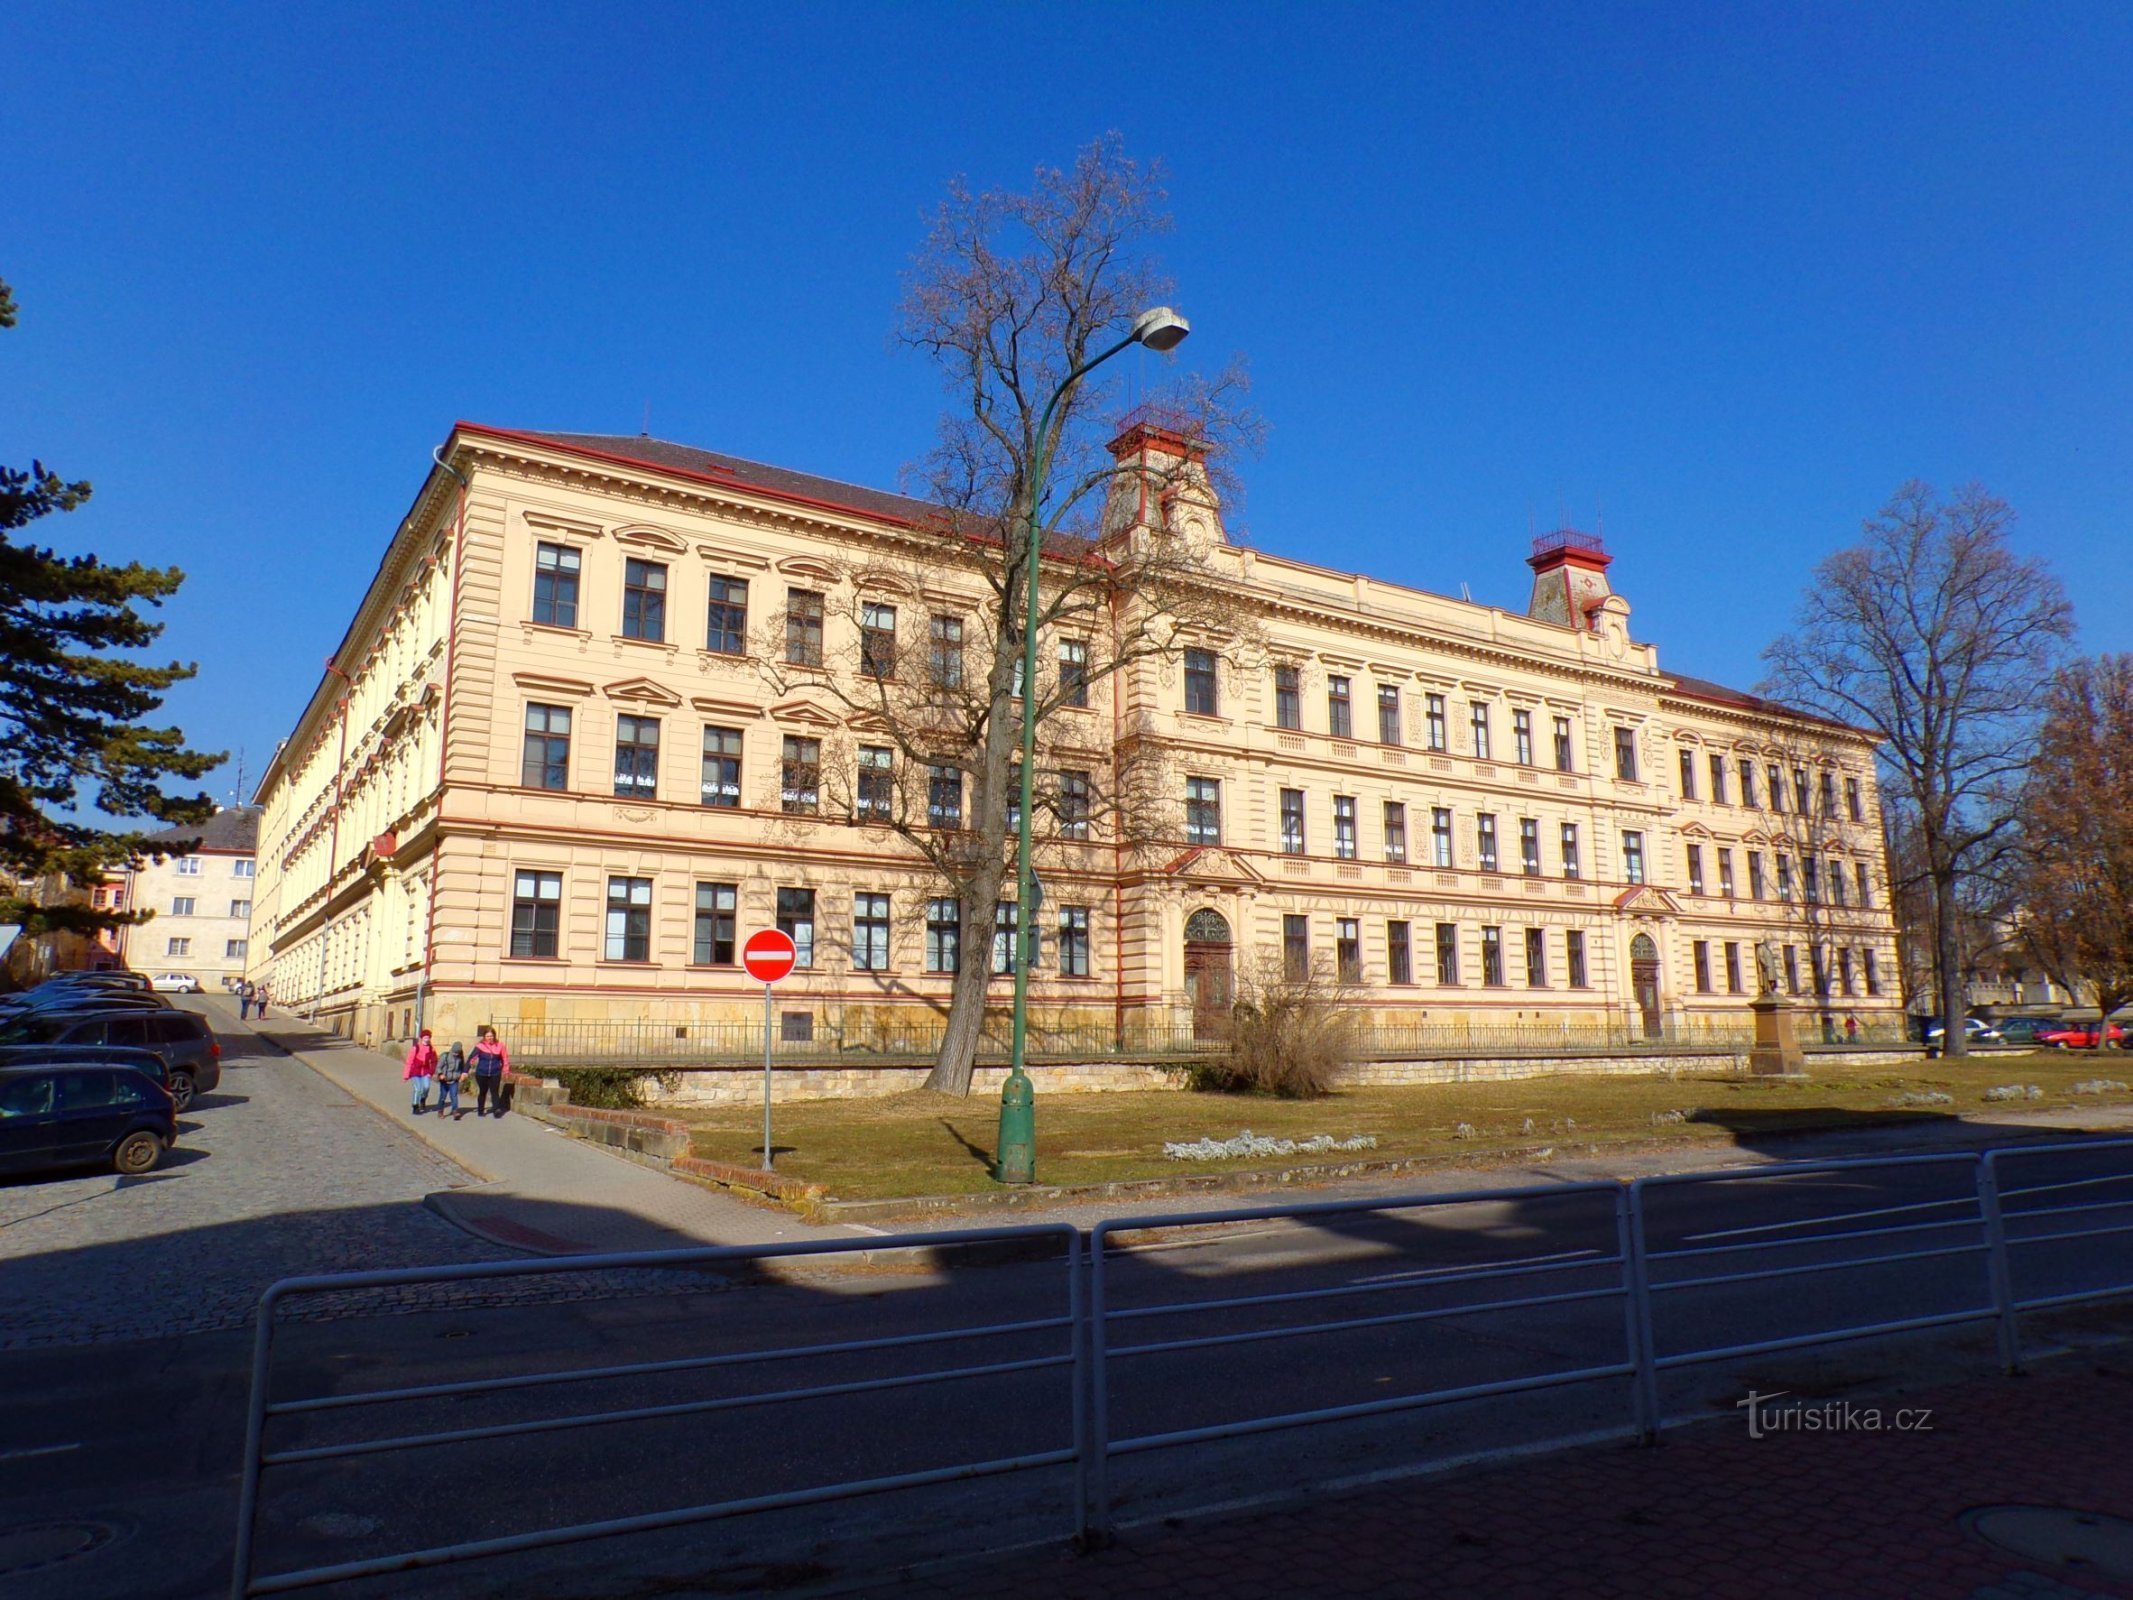 Το κτίριο του 1ου δημοτικού σχολείου με το μνημείο Jan Amos Comenius σε πρώτο πλάνο (Jičín, 3.3.2022/XNUMX/XNUMX)